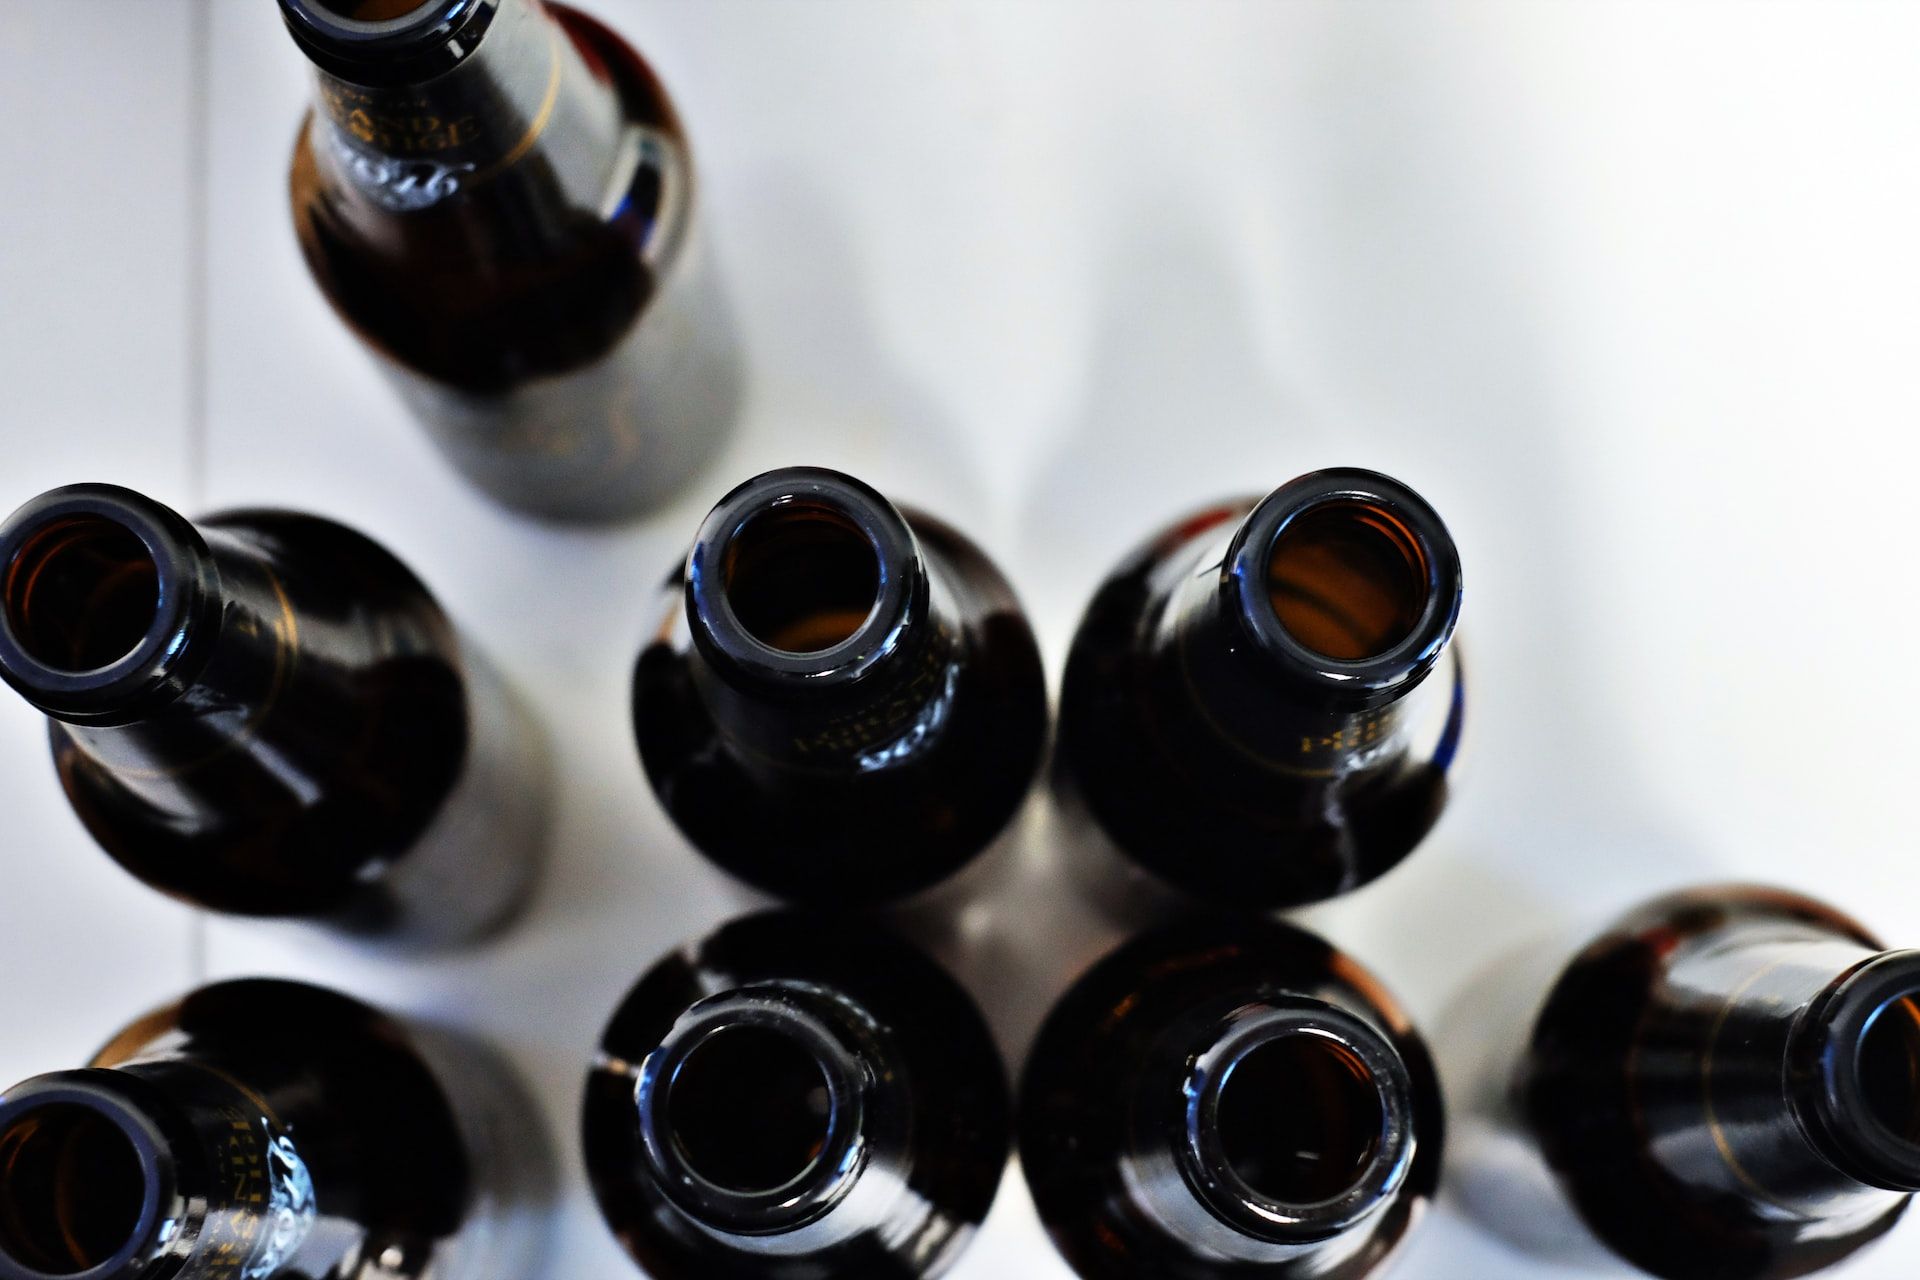 Tényleg népbetegség az alkoholizmus Közép-Európában?